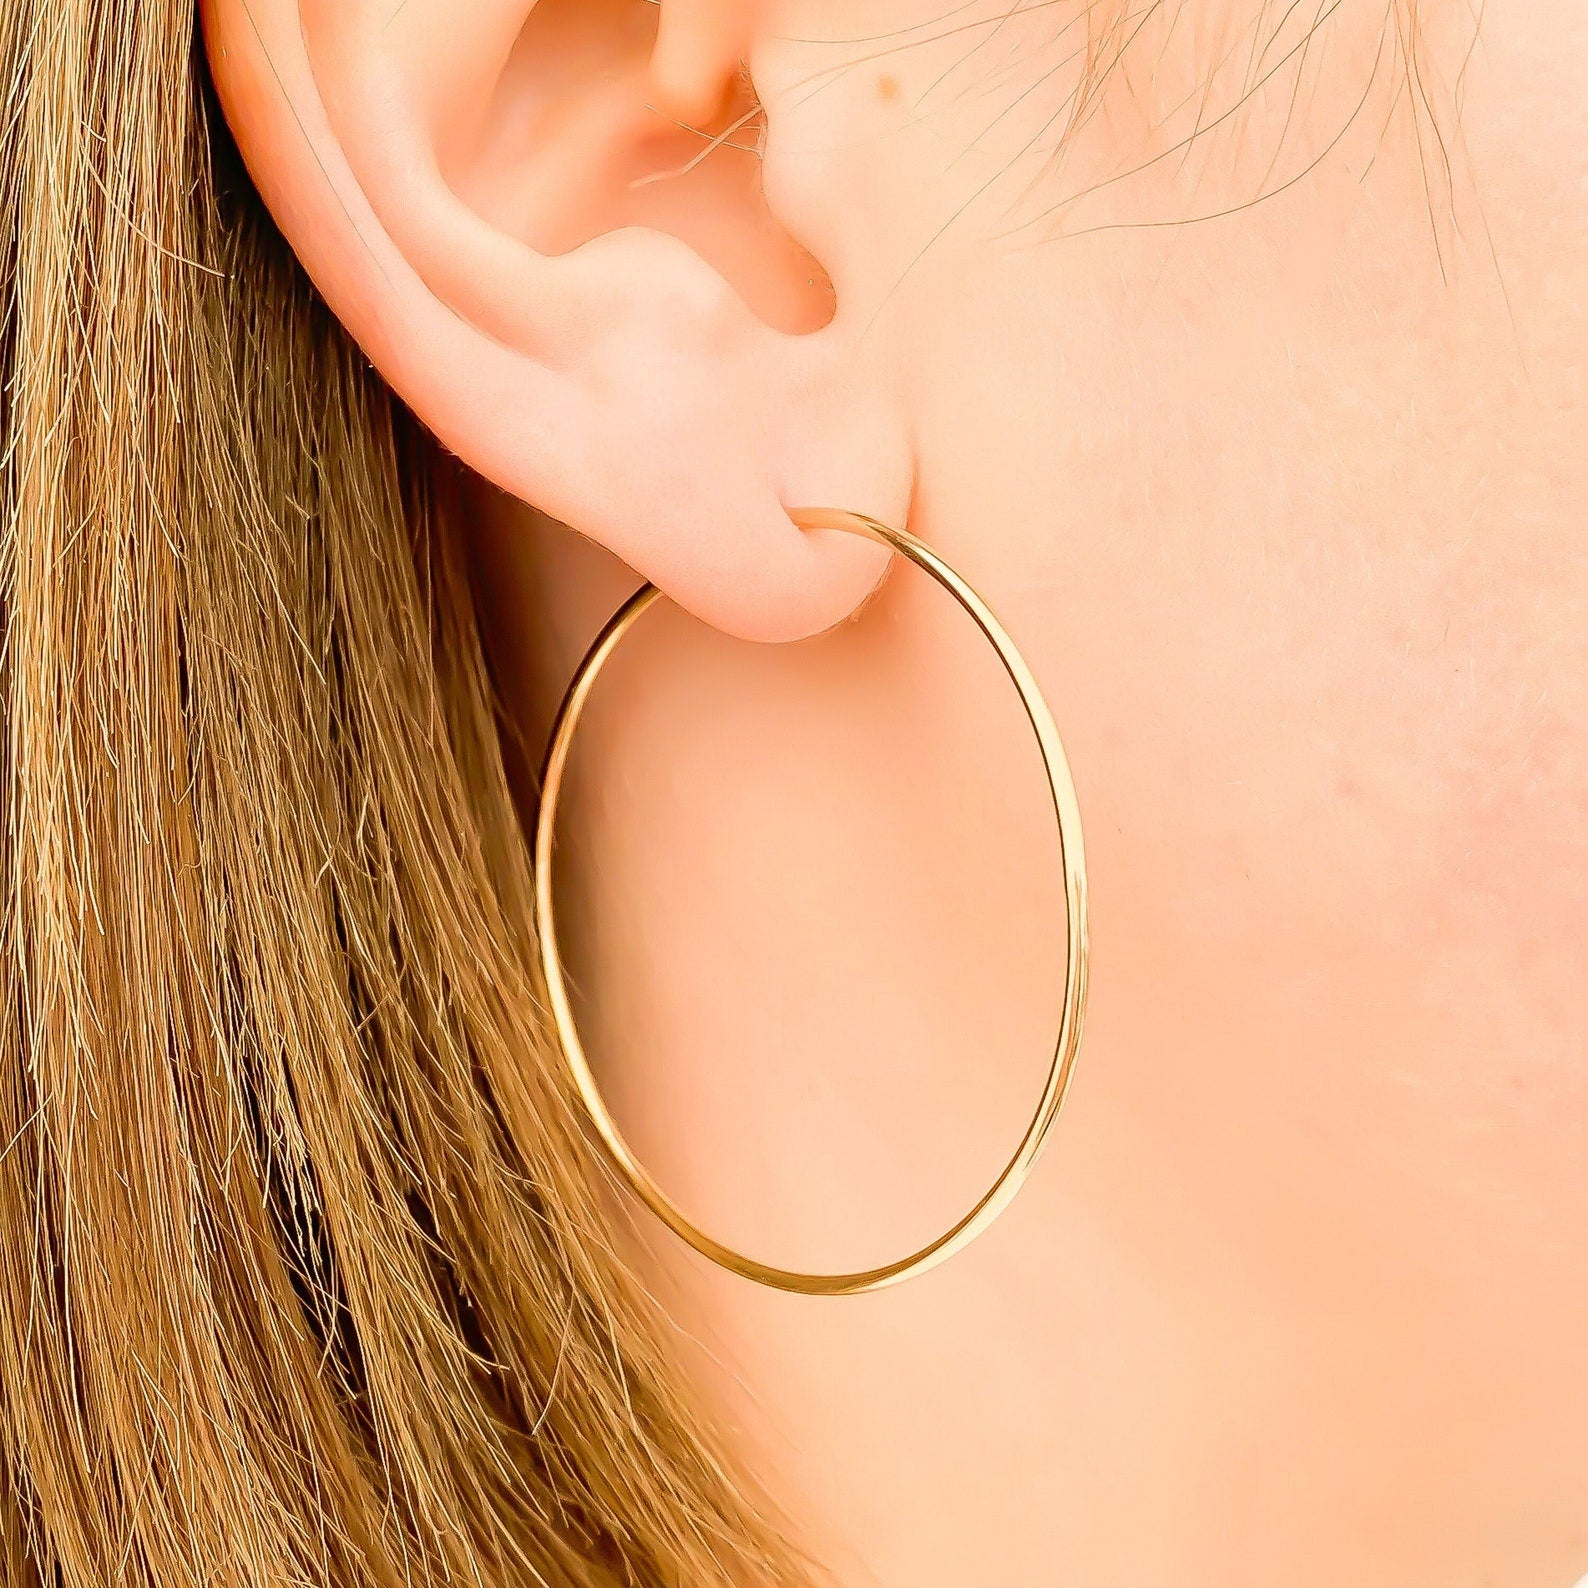 Gold Hoop Earrings 14K Gold Filled Hoops 48mm 1.9 -  Hong Kong